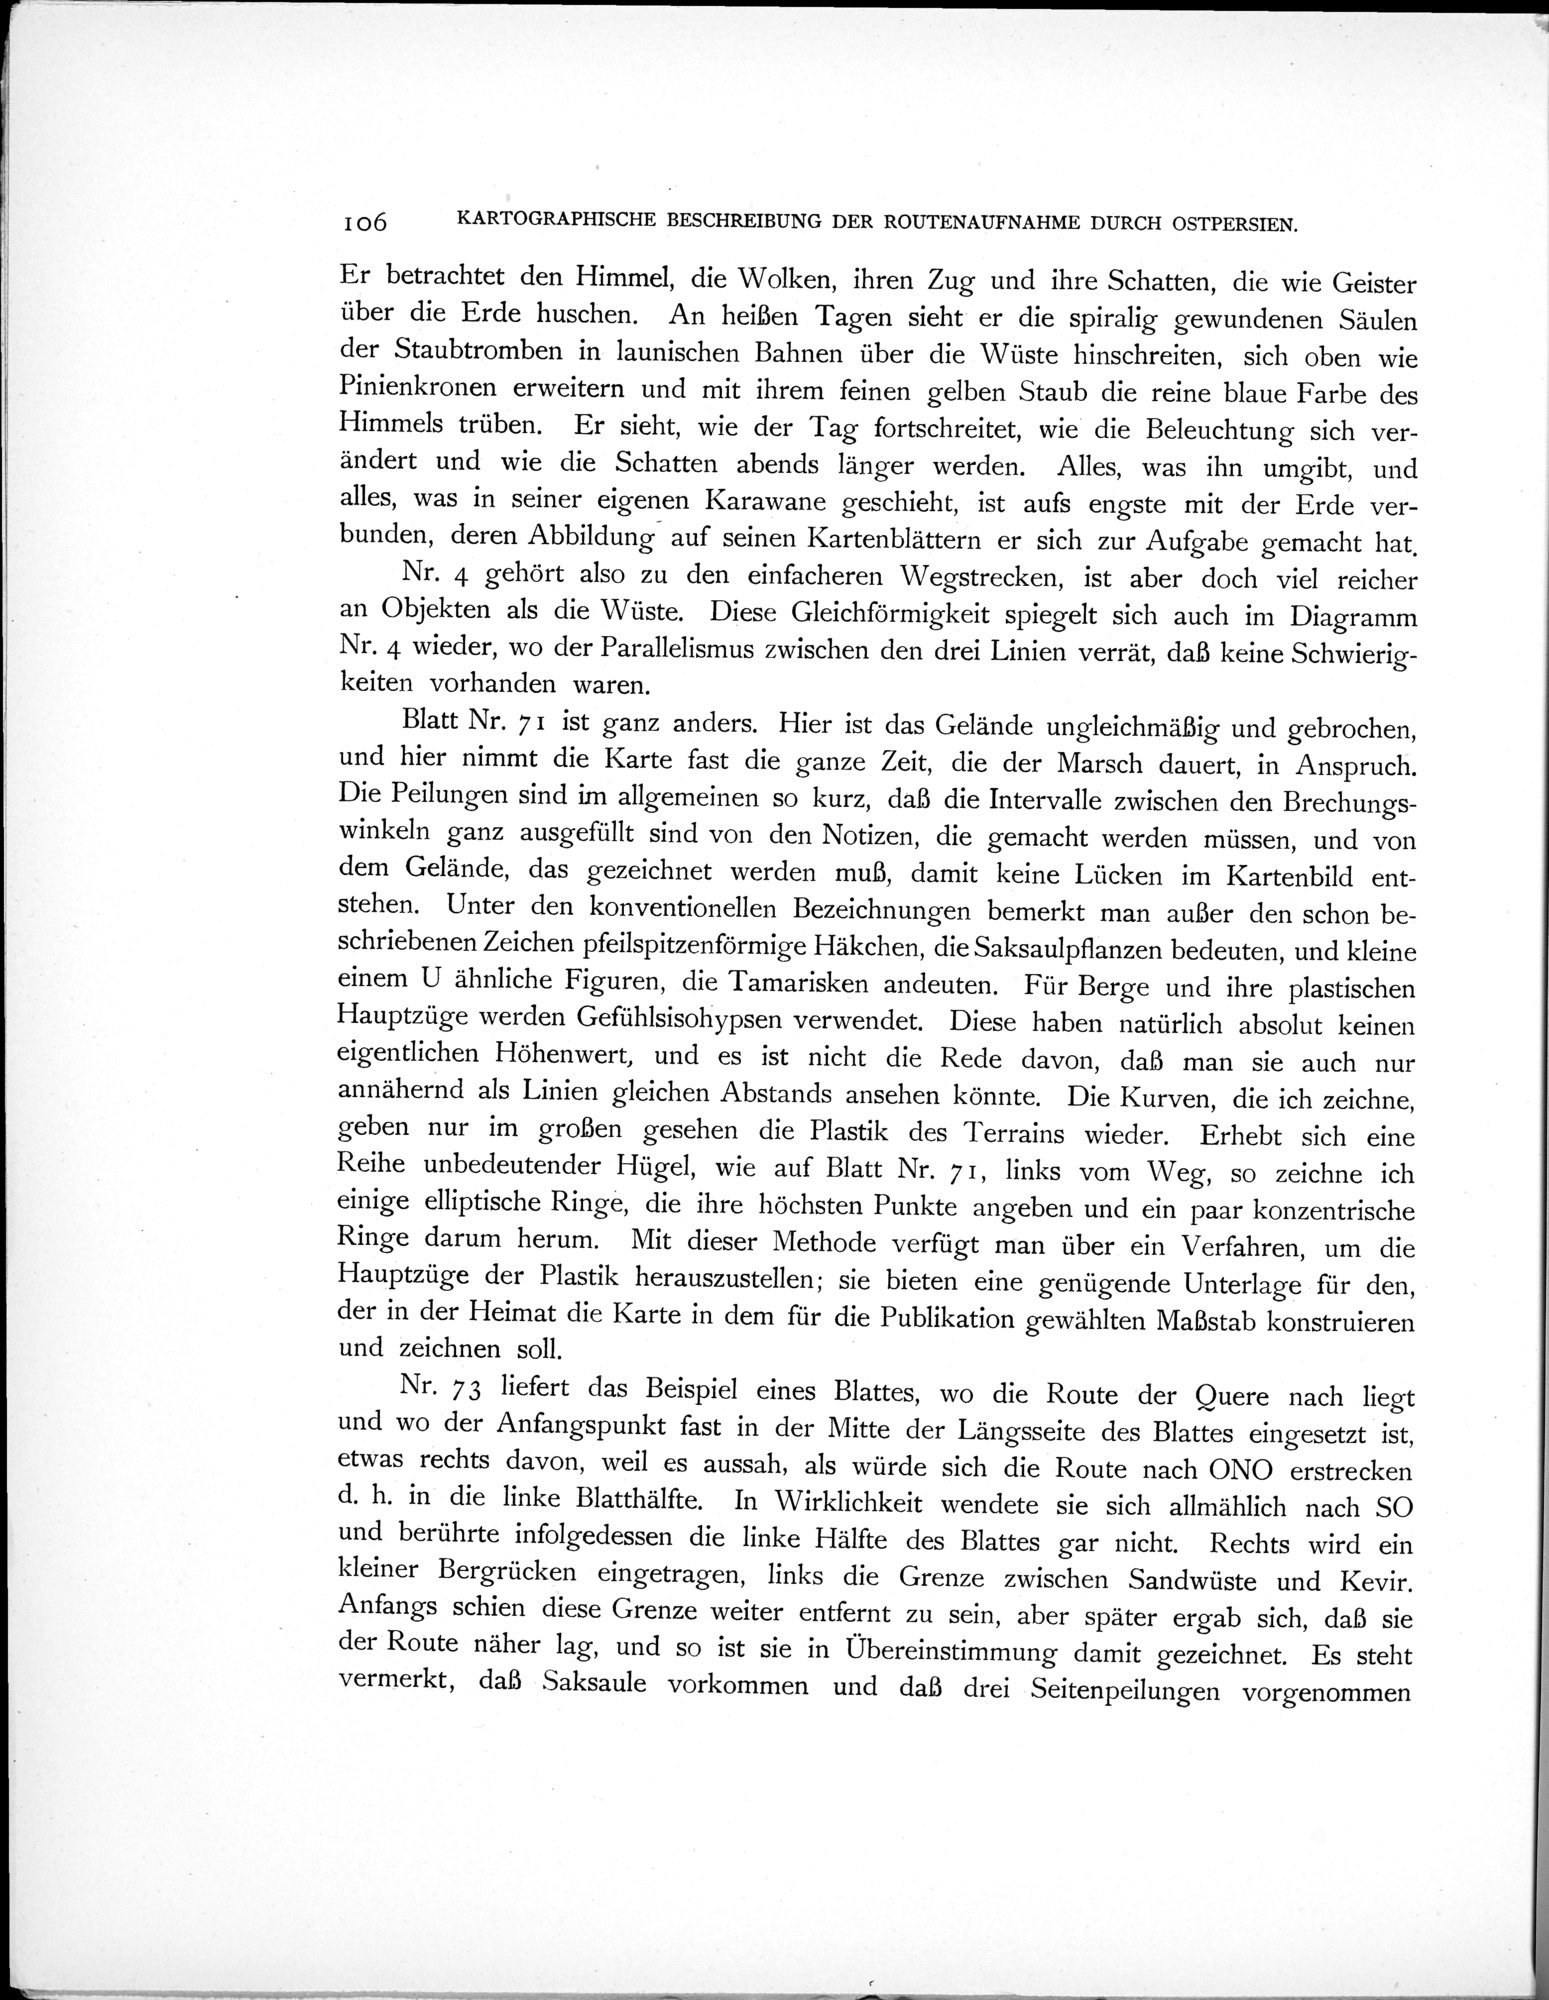 Eine Routenaufnahme durch Ostpersien : vol.2 / Page 160 (Grayscale High Resolution Image)